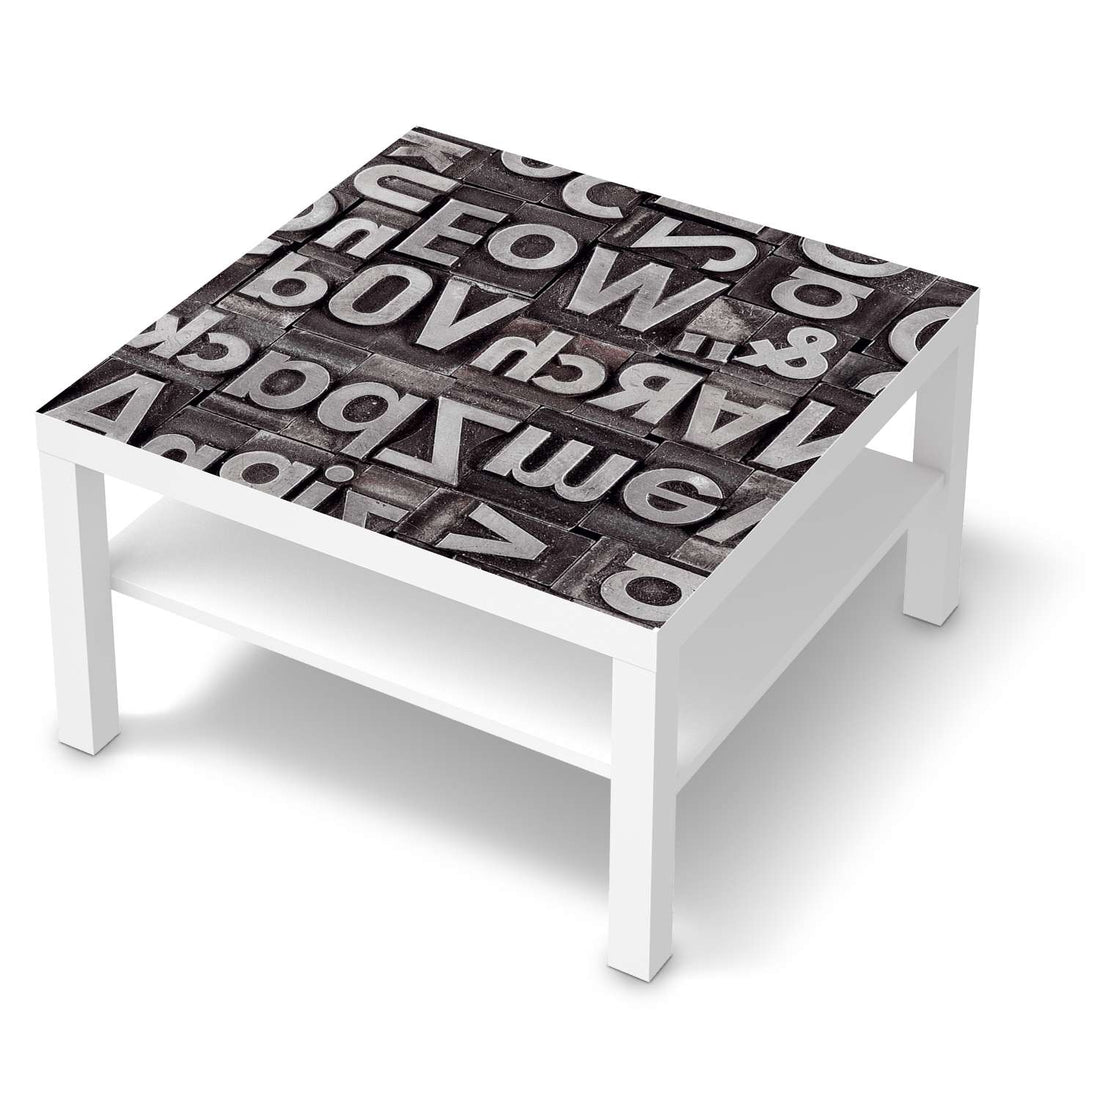 Selbstklebende Folie Alphabet - IKEA Lack Tisch 78x78 cm - weiss